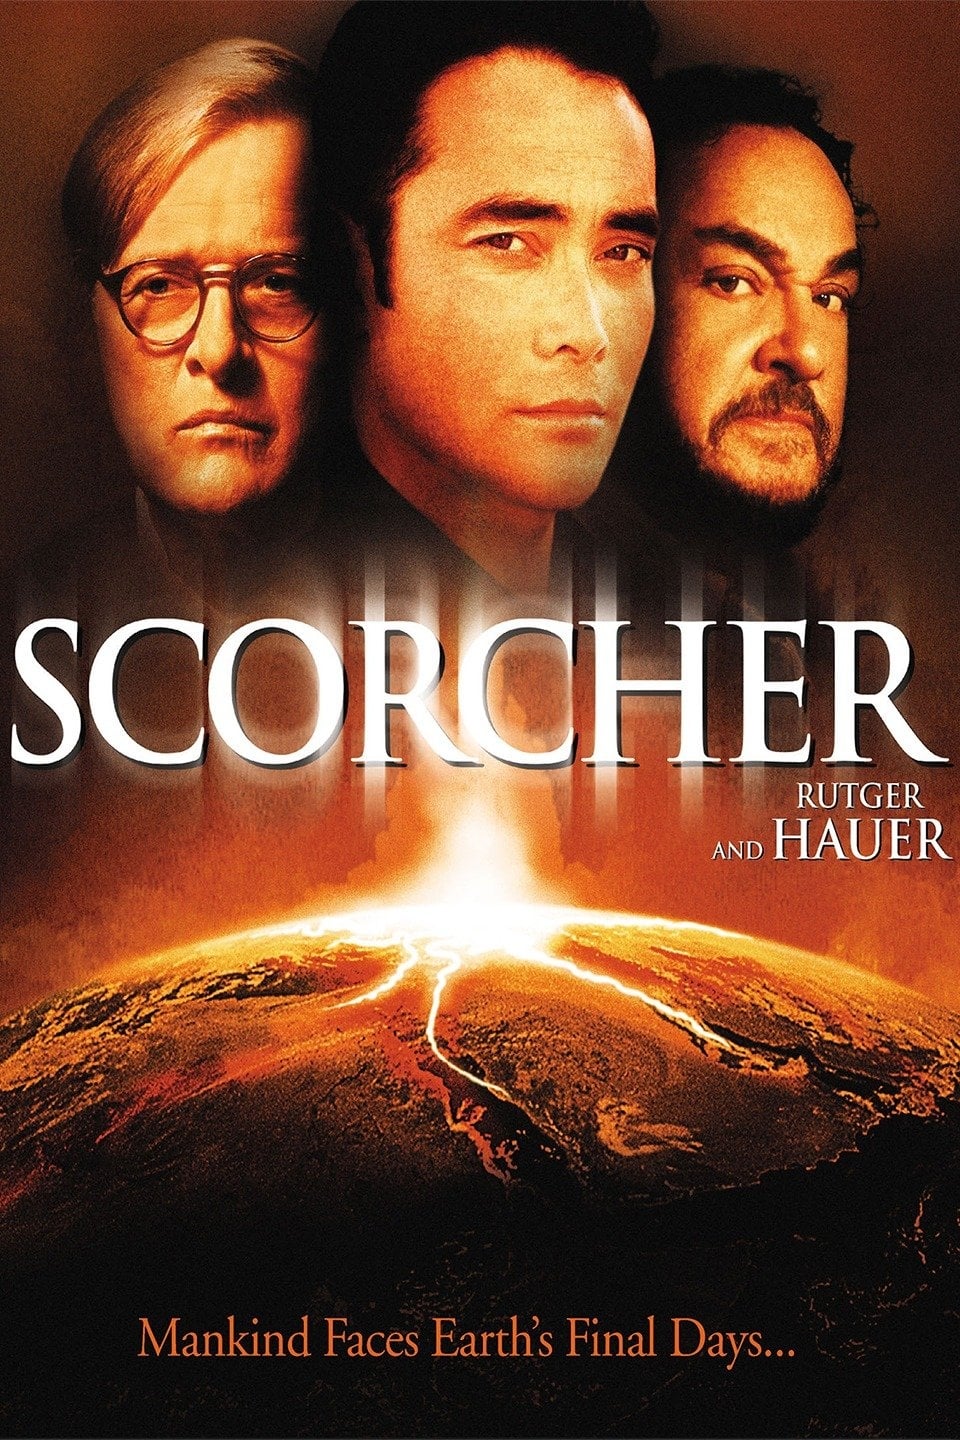 Scorcher